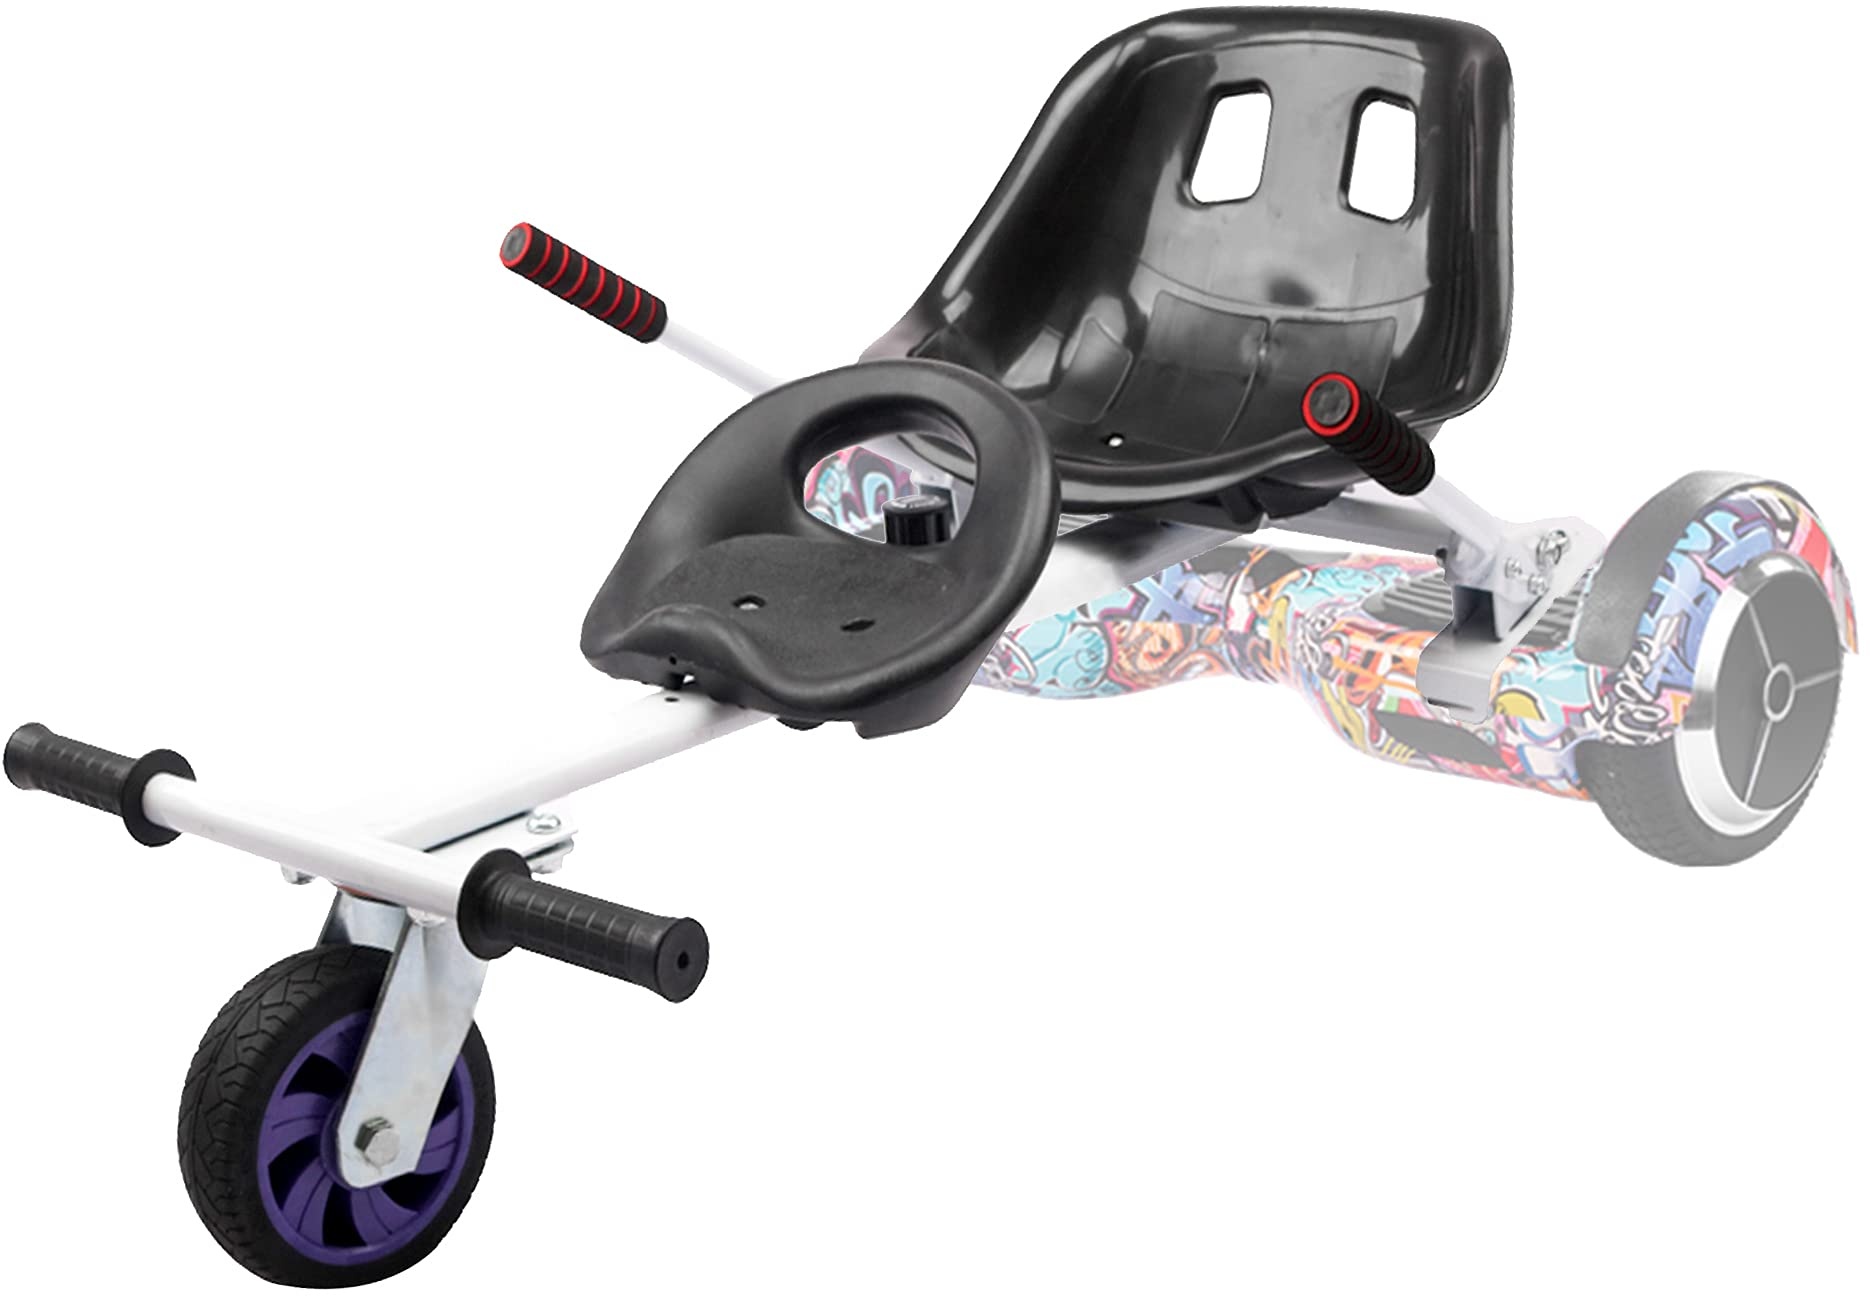 TGHY Hoverboard Sitz Hoverkart Doppelsitz Verstellbarer Rahmen Verwandeln Sie Ihren Selbstausgleichenden Scooter in Go-Kart Passen Auf 6,5" 8" und 10" Machen Das Fahren Spaß und Sicher,Weiß,PU